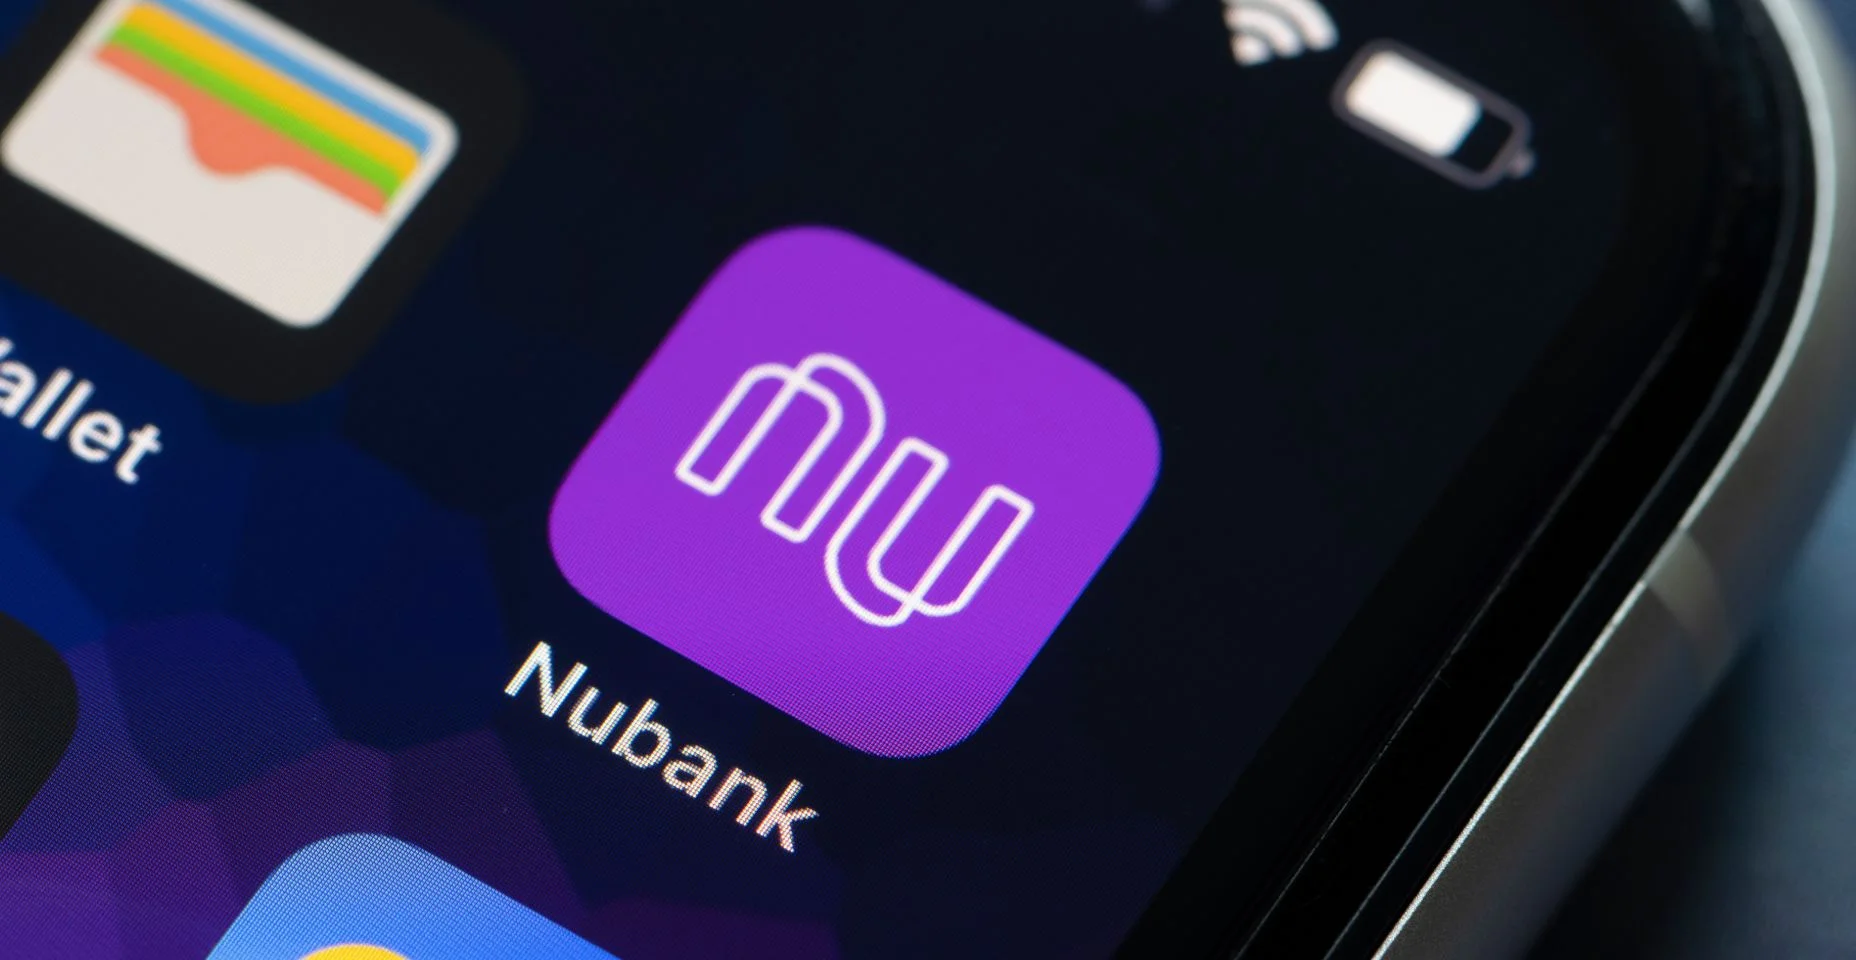 Ícone do aplicativo móvel Nubank é visto em um iPhone. O Nubank é um neobanco latino-americano com sede em São Paulo, Brasil, e a maior fintech da América Latina.